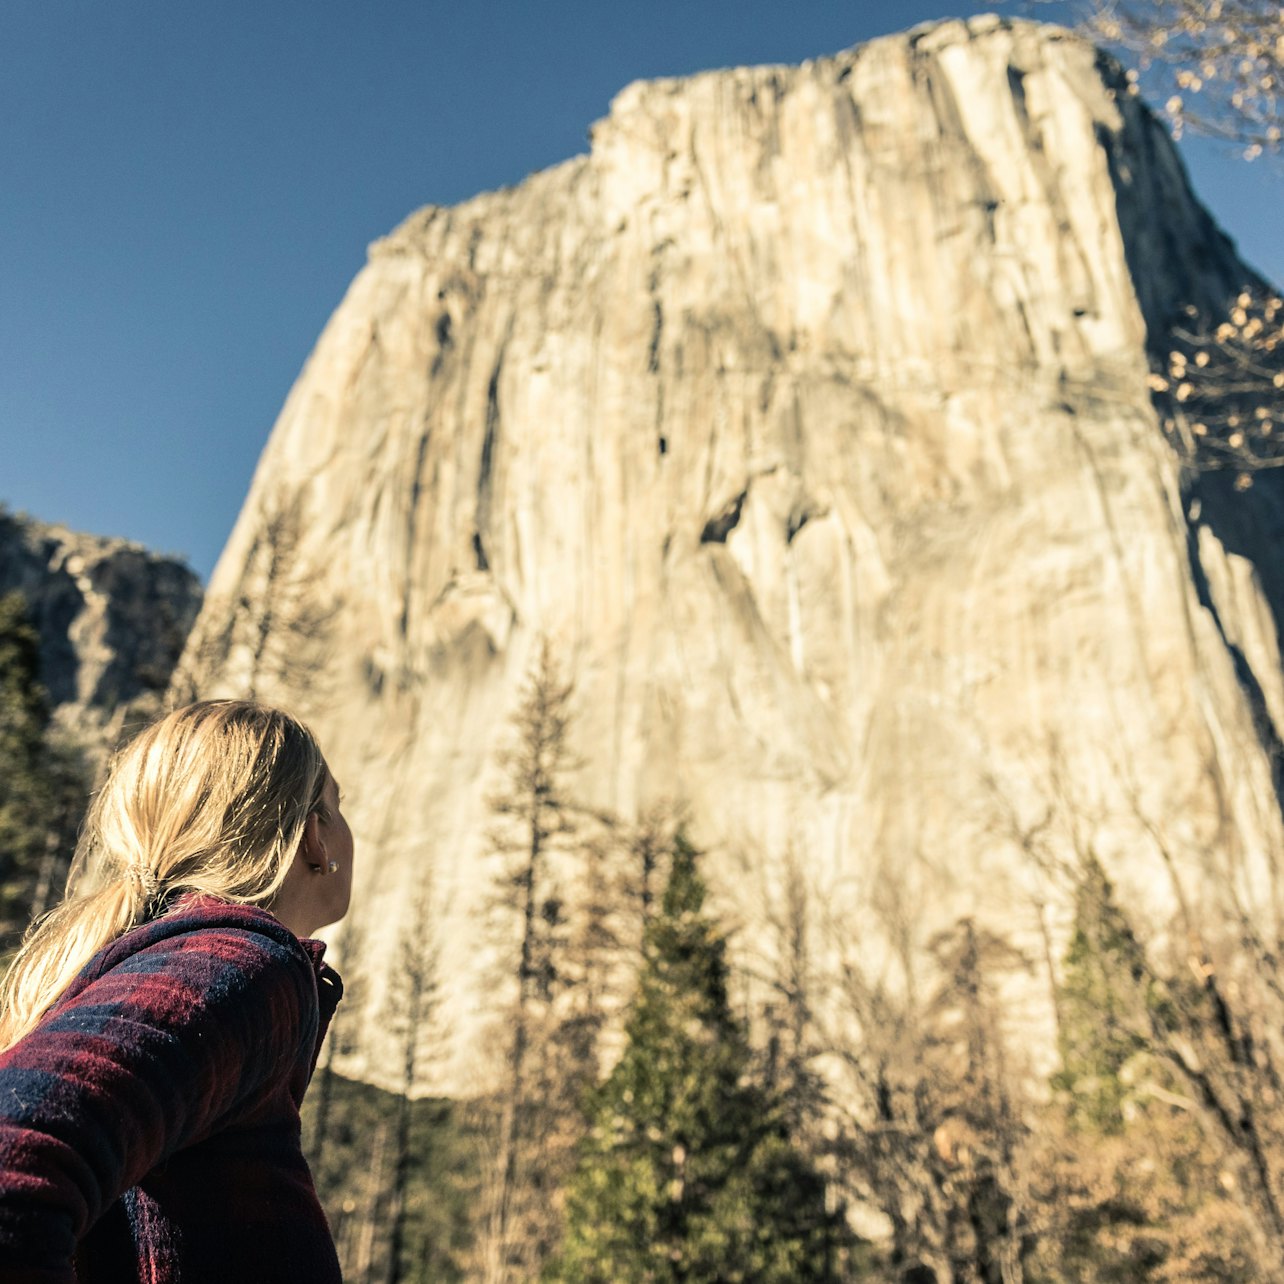 Desde San Francisco: Excursión de 1 día a Yosemite y las Secuoyas Gigantes - Alojamientos en San Francisco